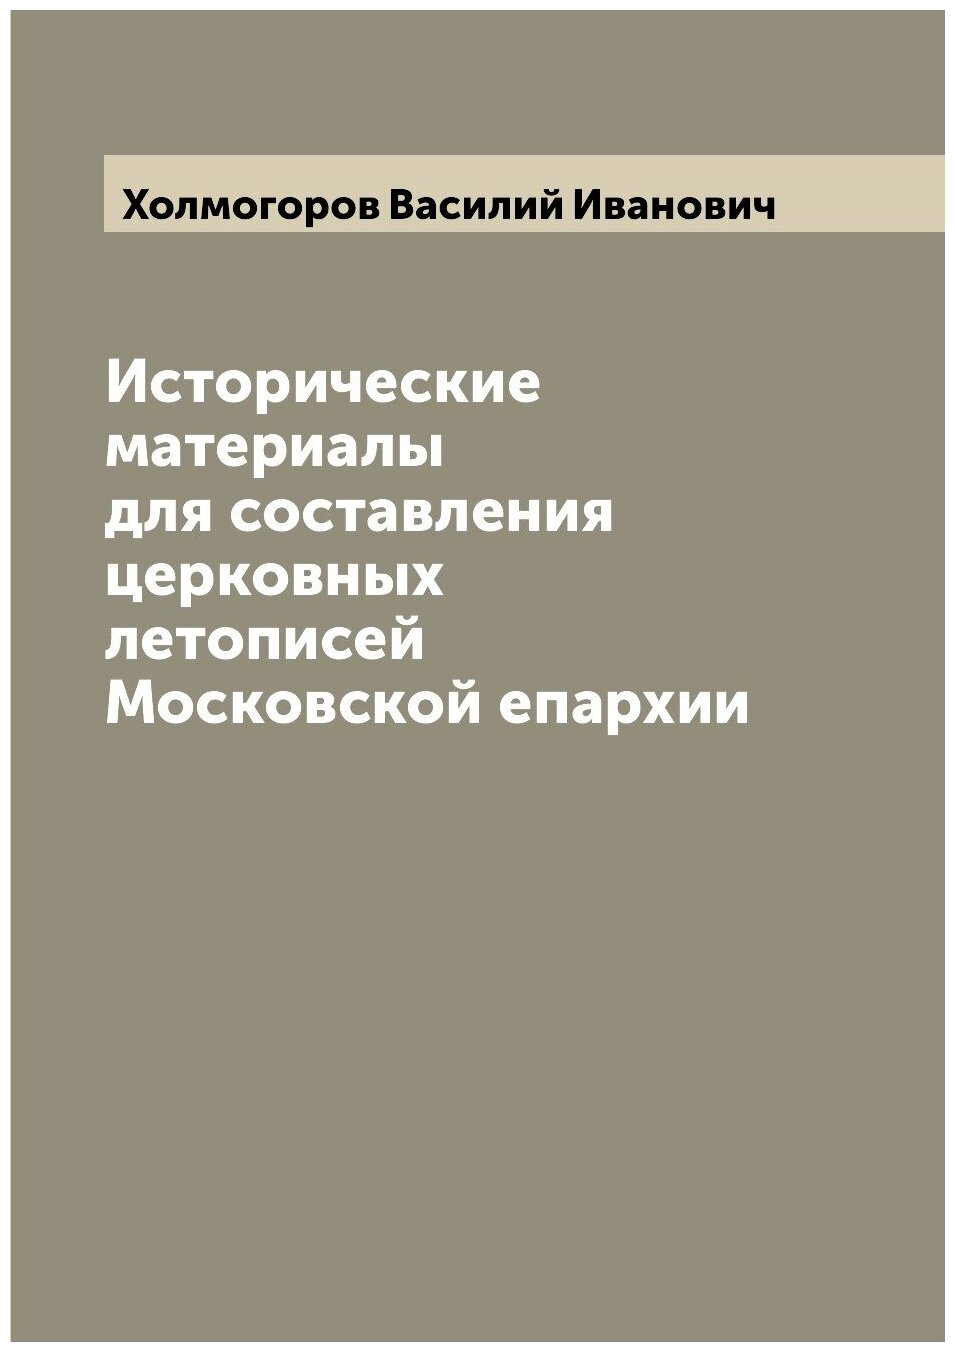 Книга Исторические материалы для составления церковных летописей Московской епархии - фото №1